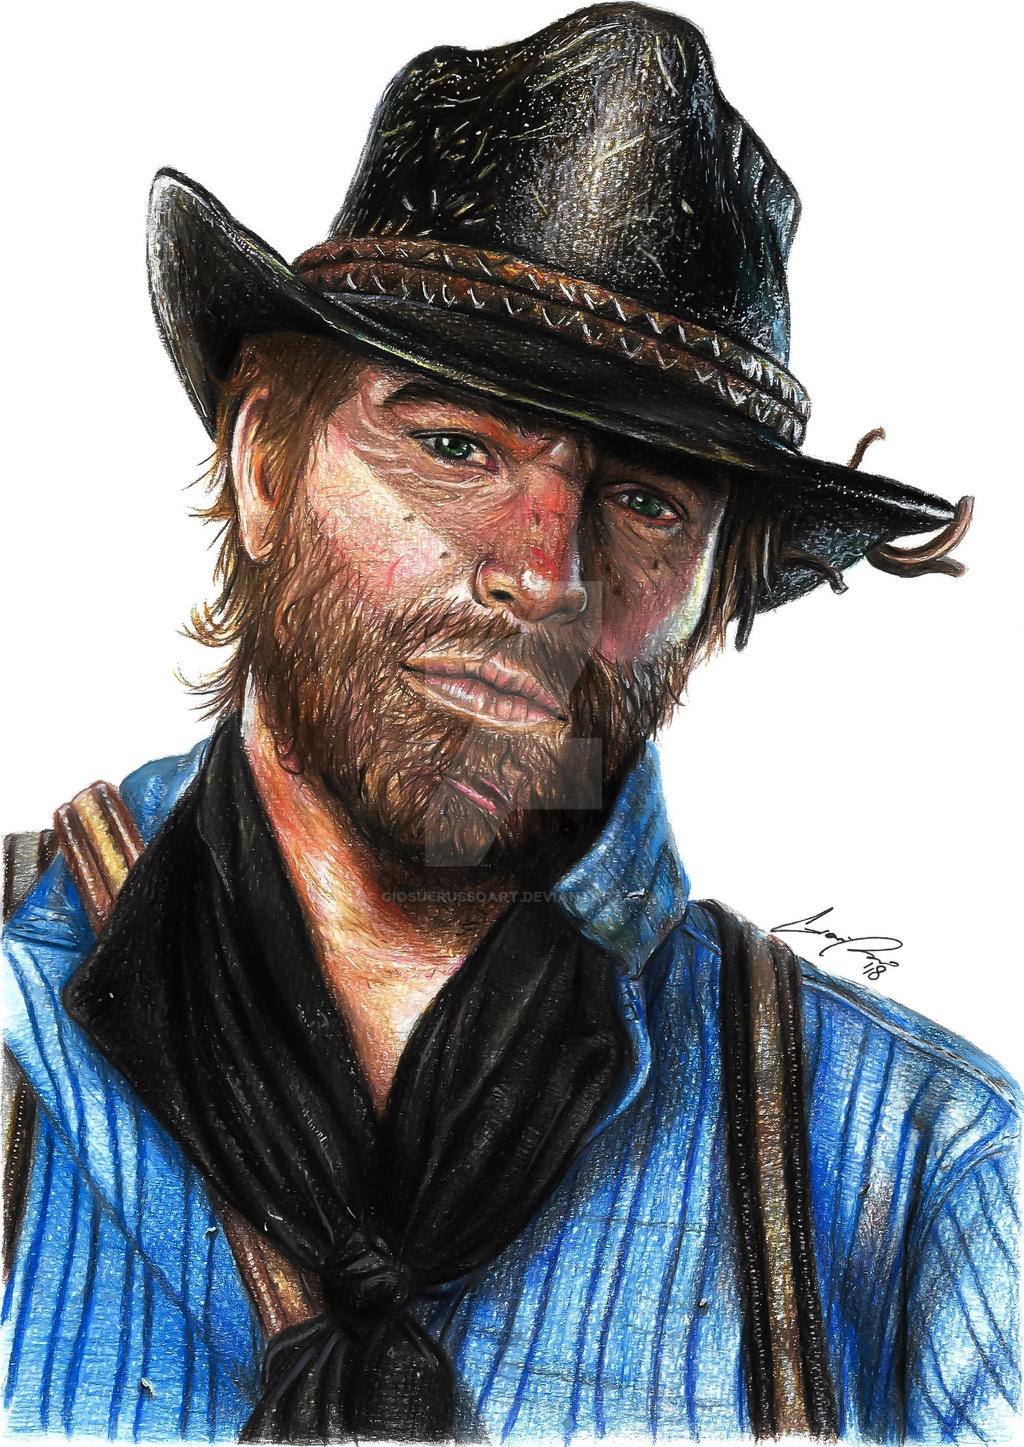 Morgan Drawing Dead Redemption 2 by giosuerussoart on DeviantArt